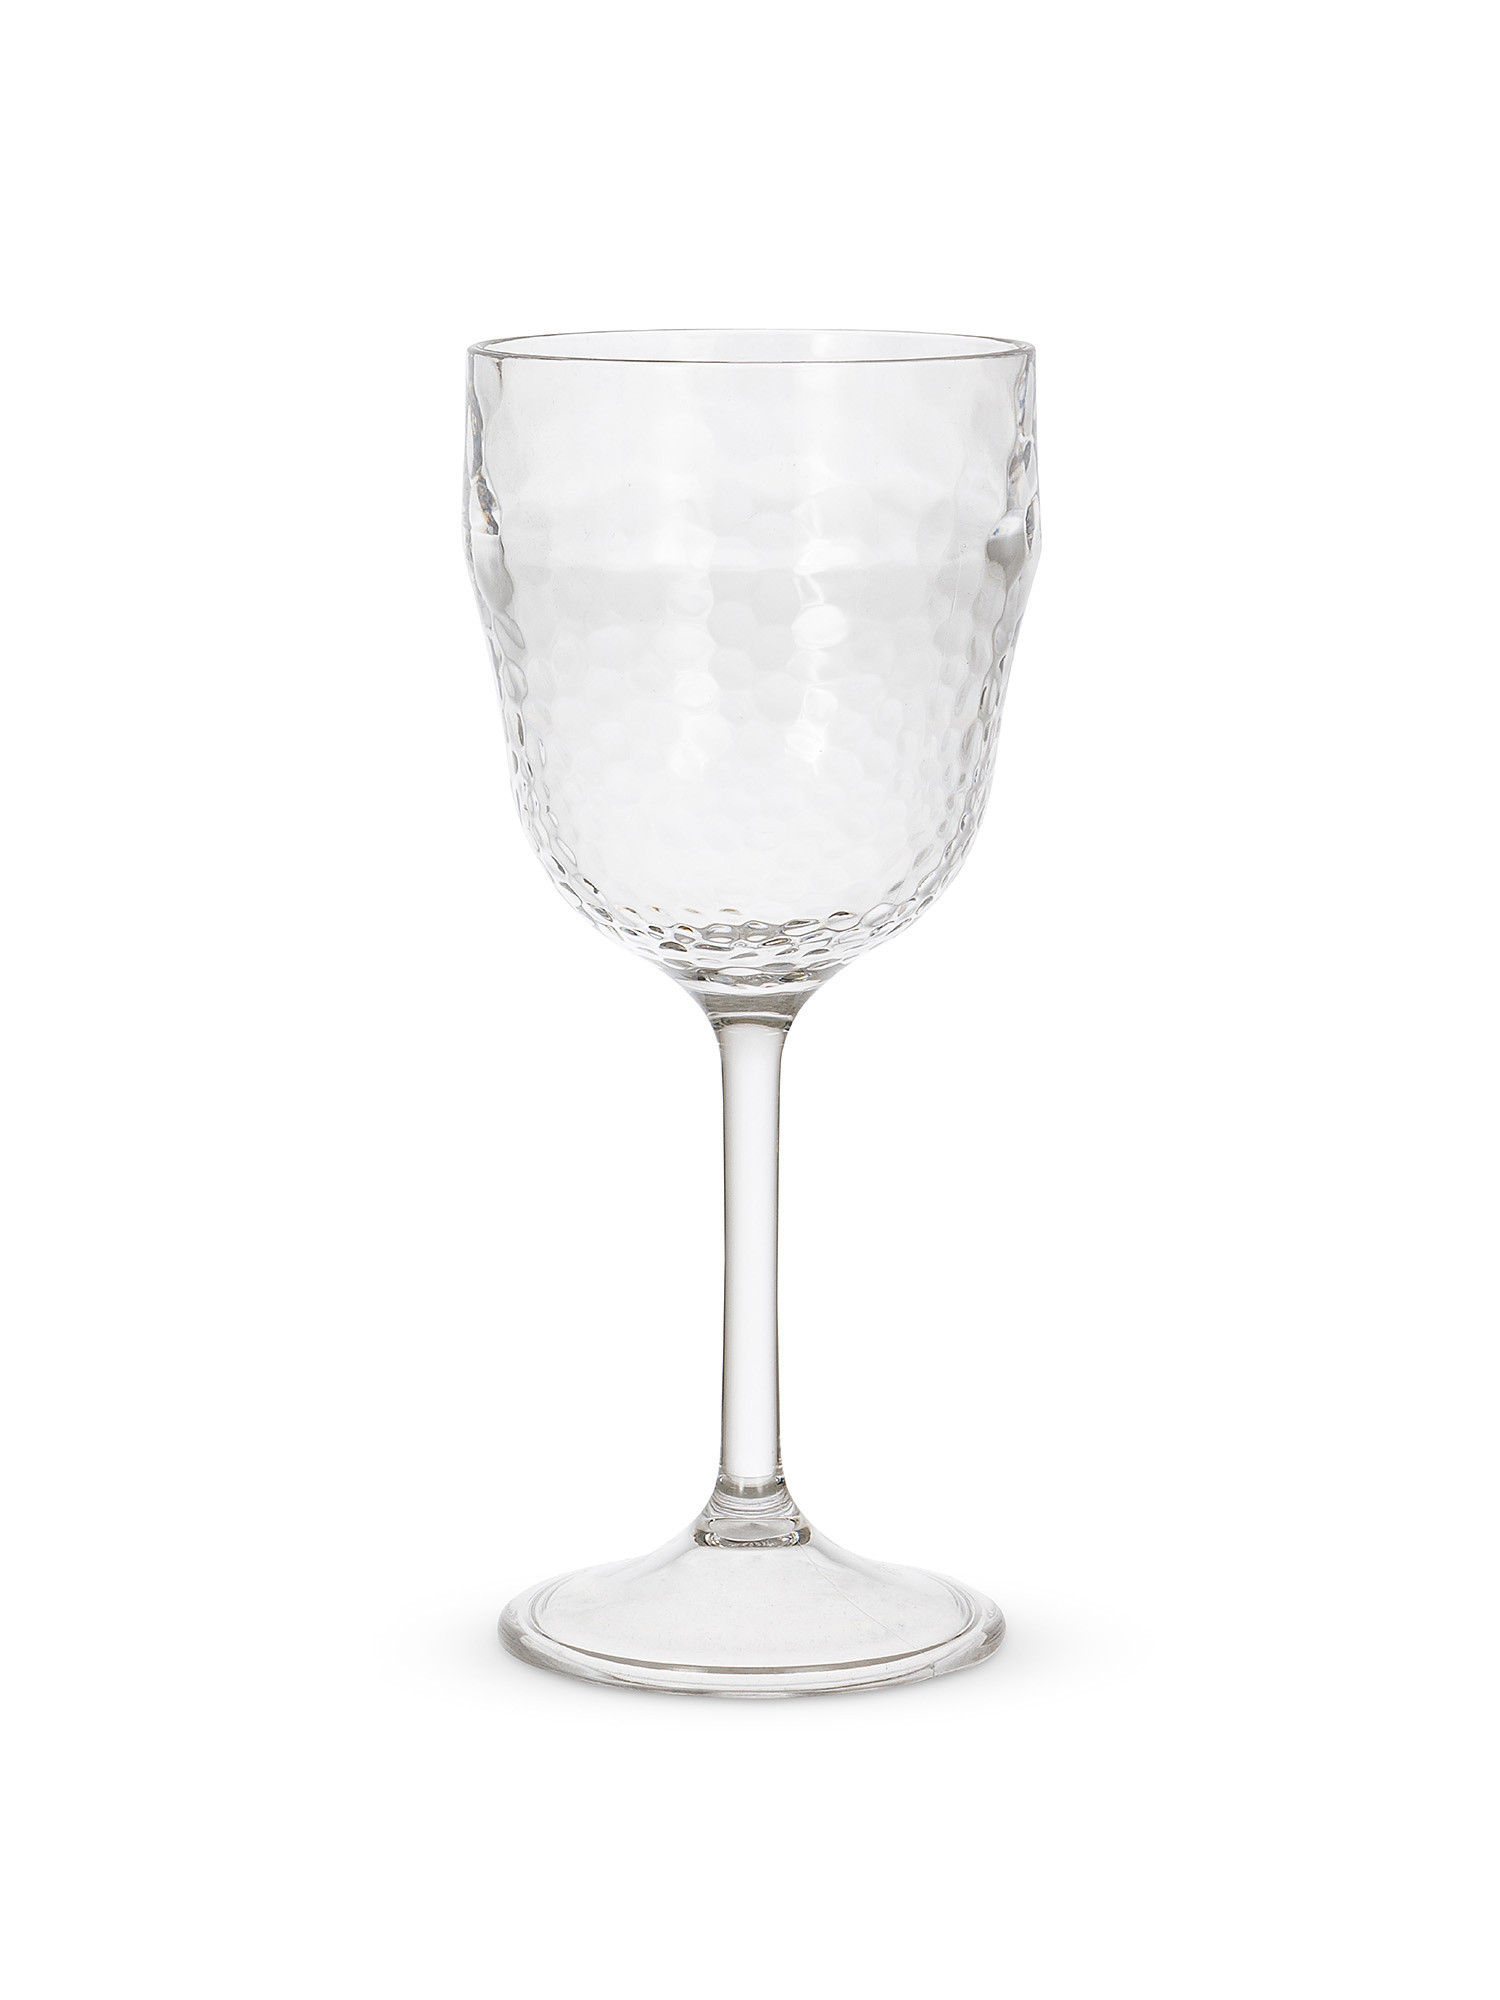 Plastic goblet with hammered effect, Transparent, large image number 0